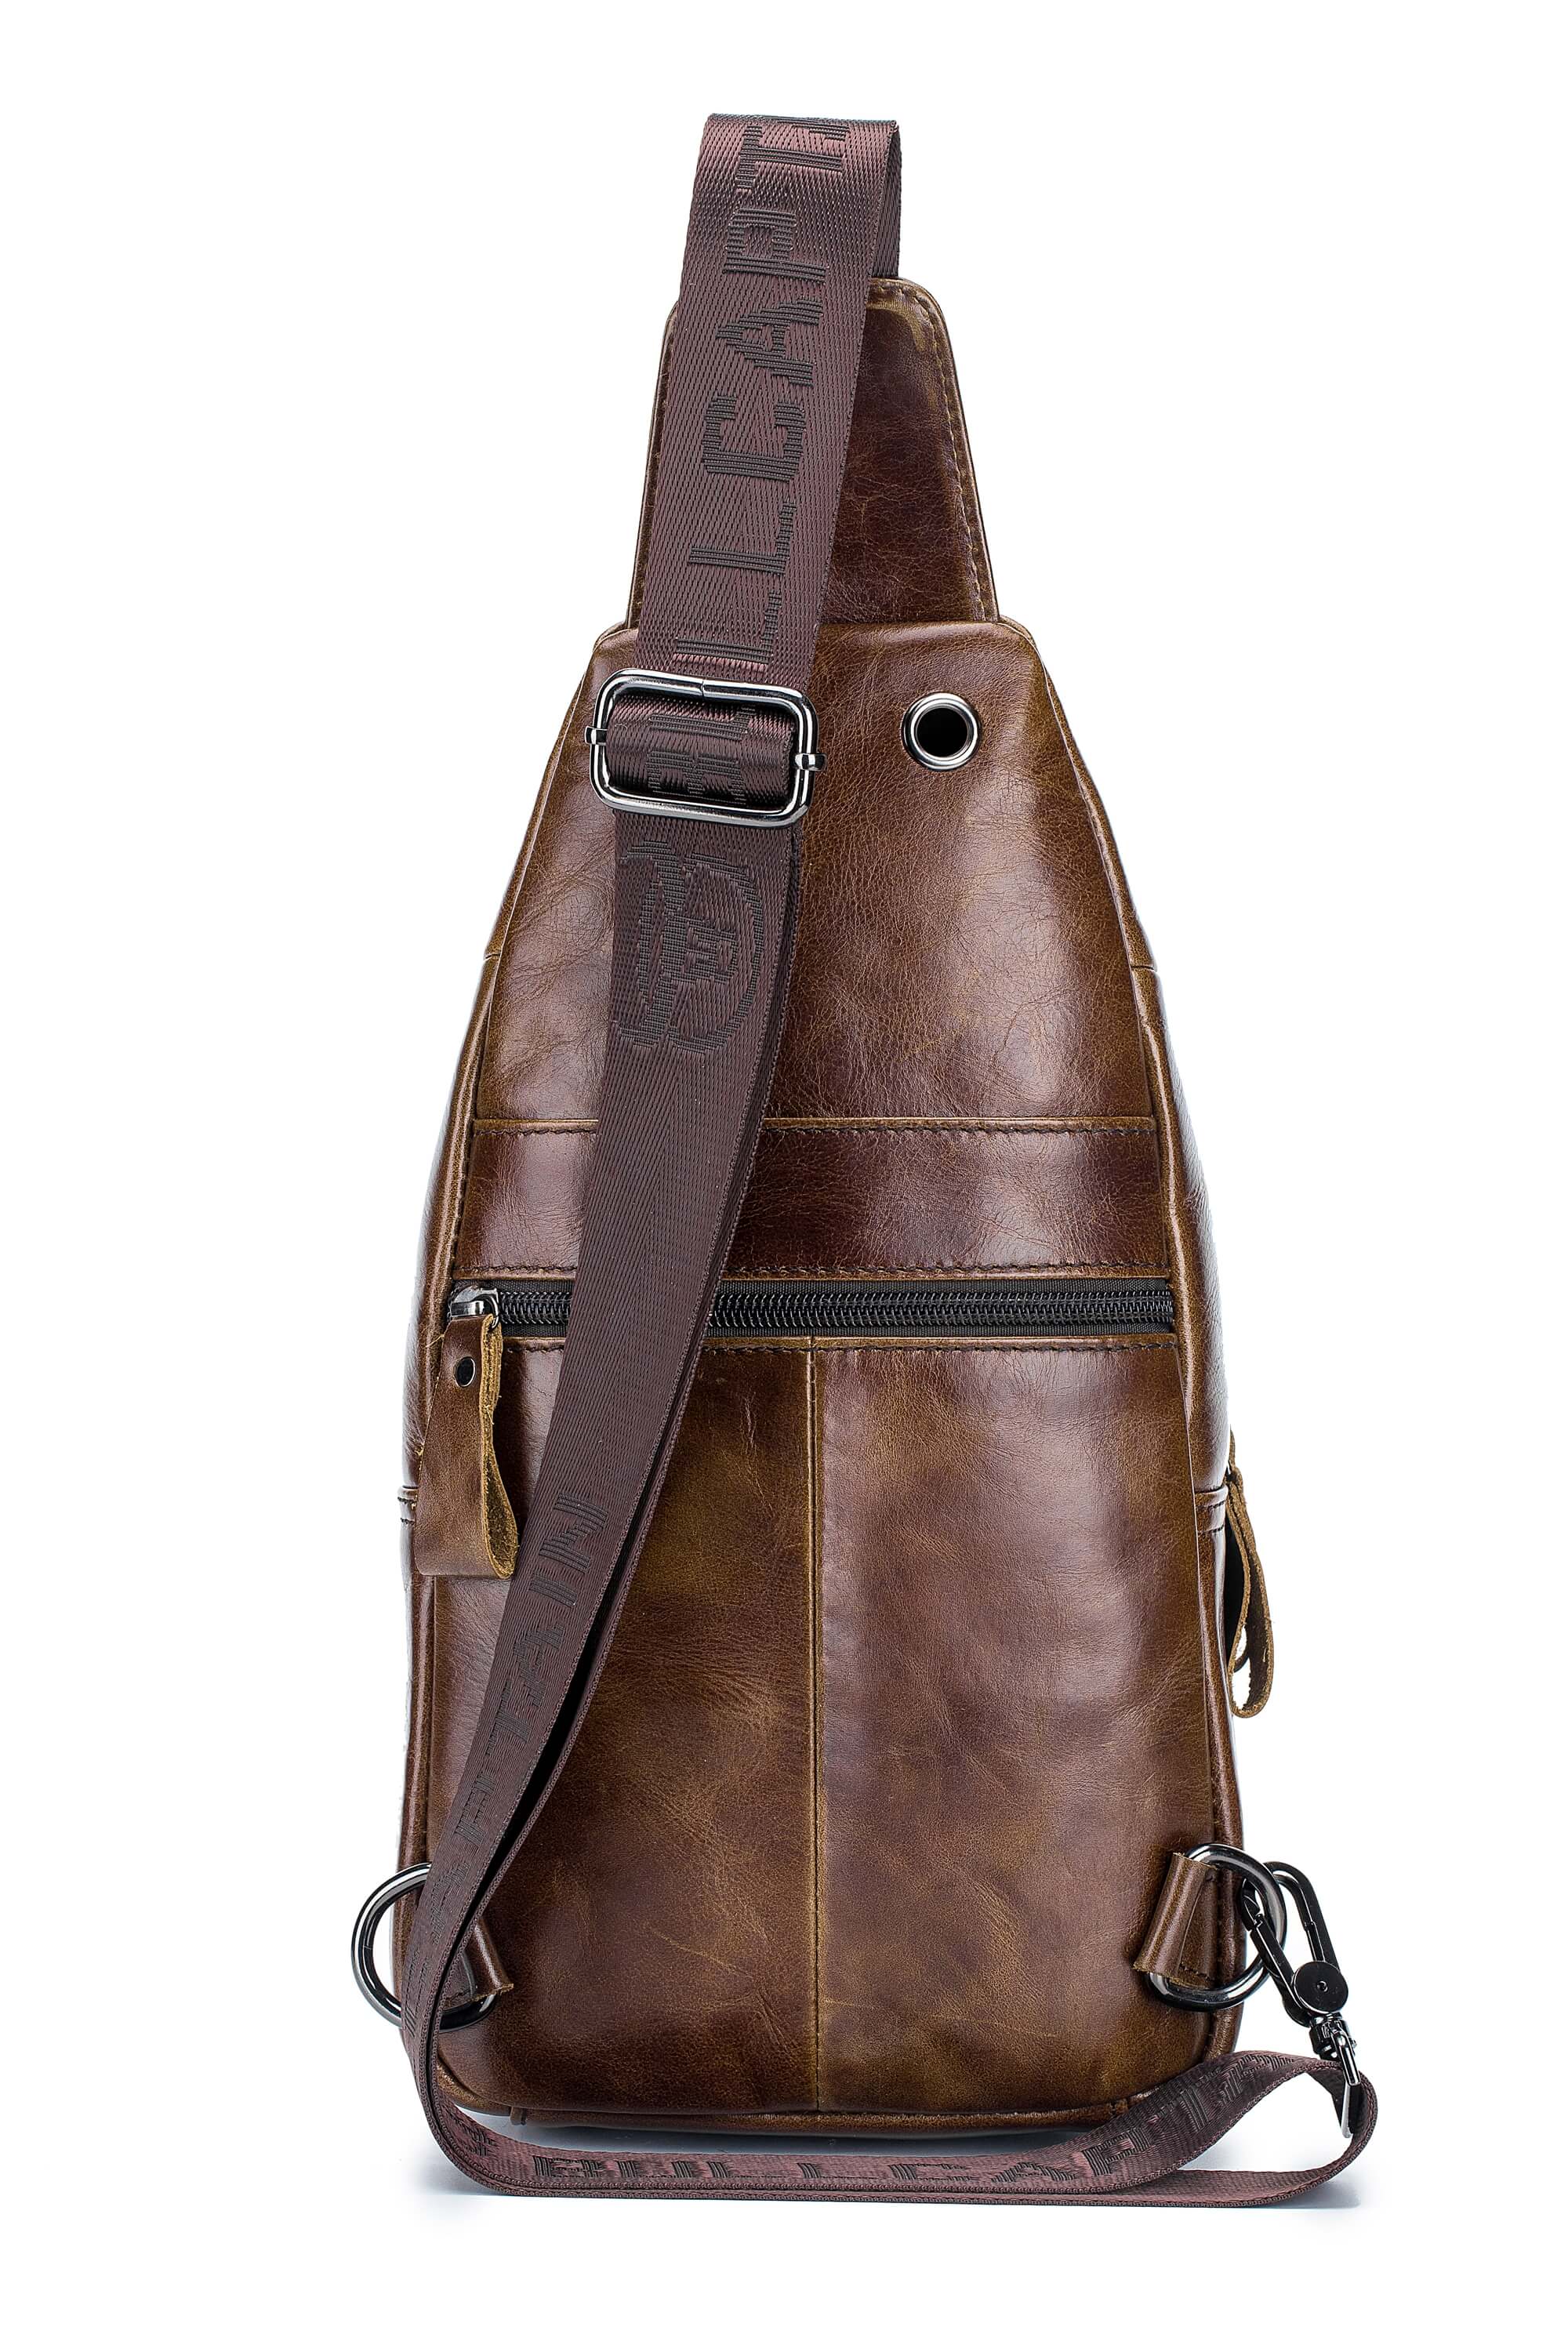 BULLCAPTAIN Leather Sling Bag for Men,Full Grain Genuine Leather Casual ...